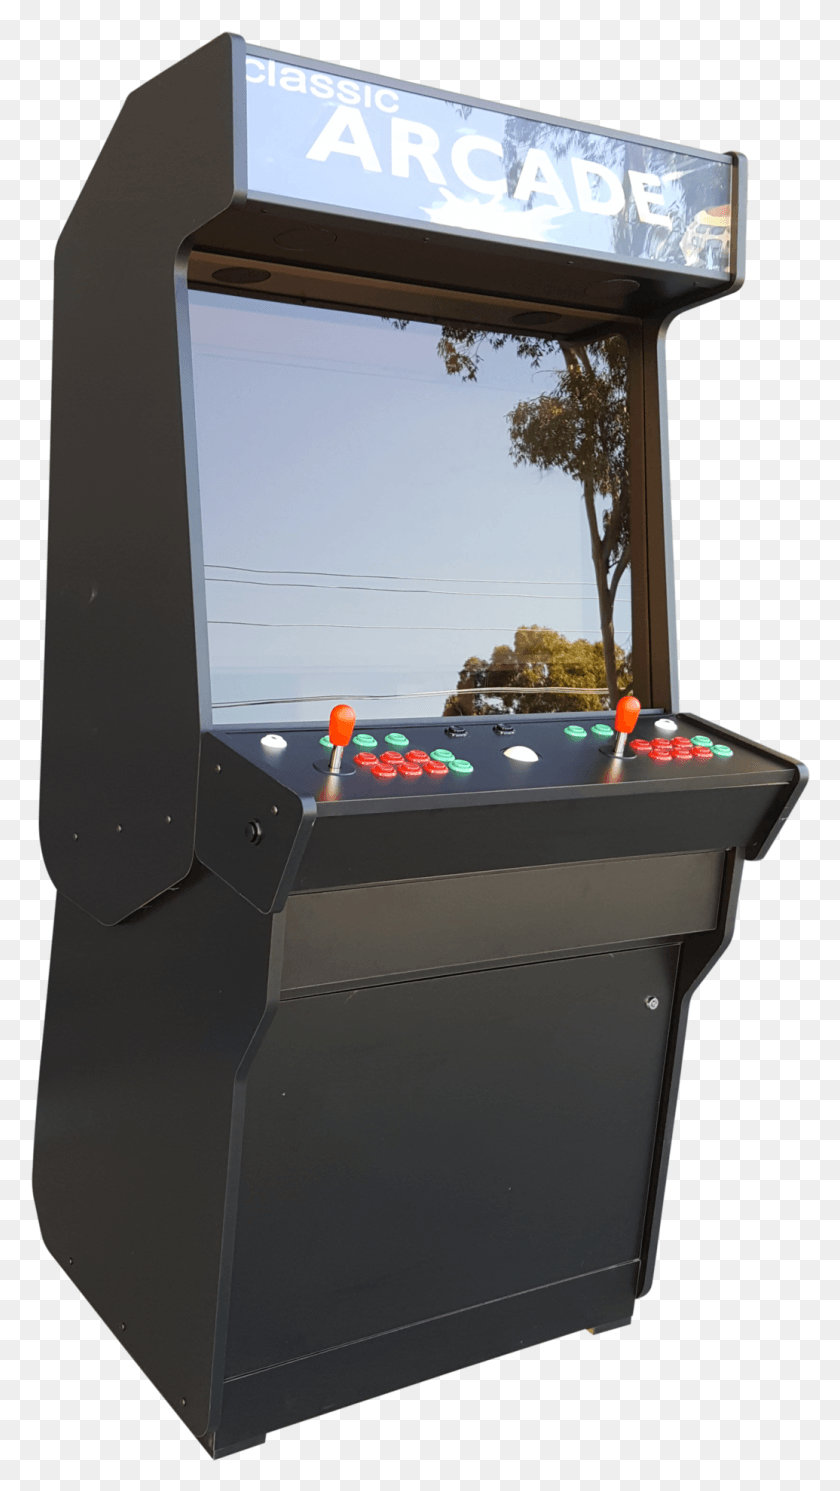 1035x1899 Аркадный Рисунок В Шкафу Аркадный Автомат, Аркадный Игровой Автомат Png Скачать